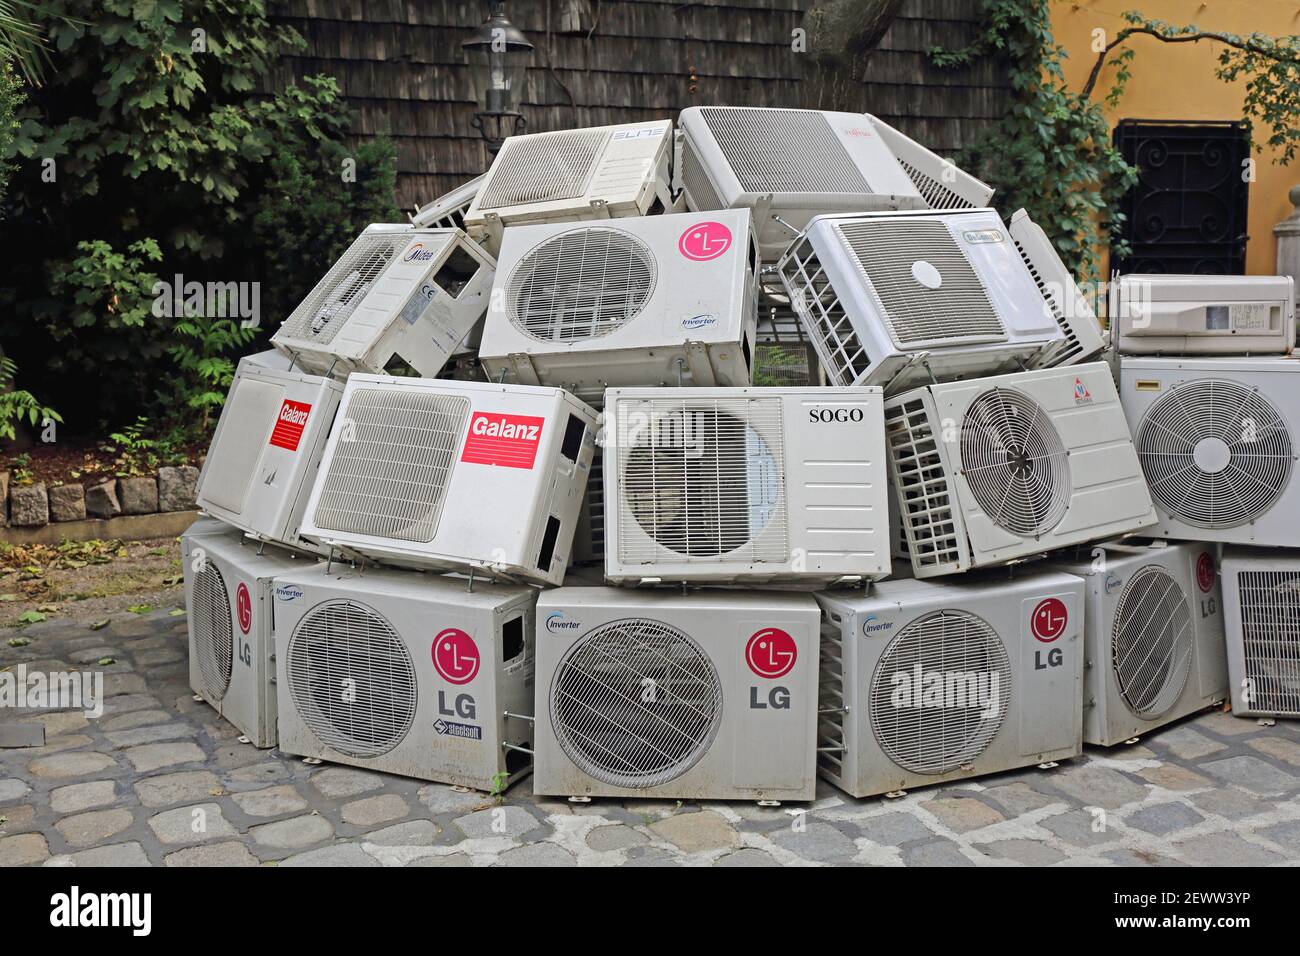 Wien, Österreich - 12. Juli 2015: Projekt Klimaänderungen Klimageräte in  Igloform Ausstellung im Kunst Haus Yard in Wien, Österreich Stockfotografie  - Alamy